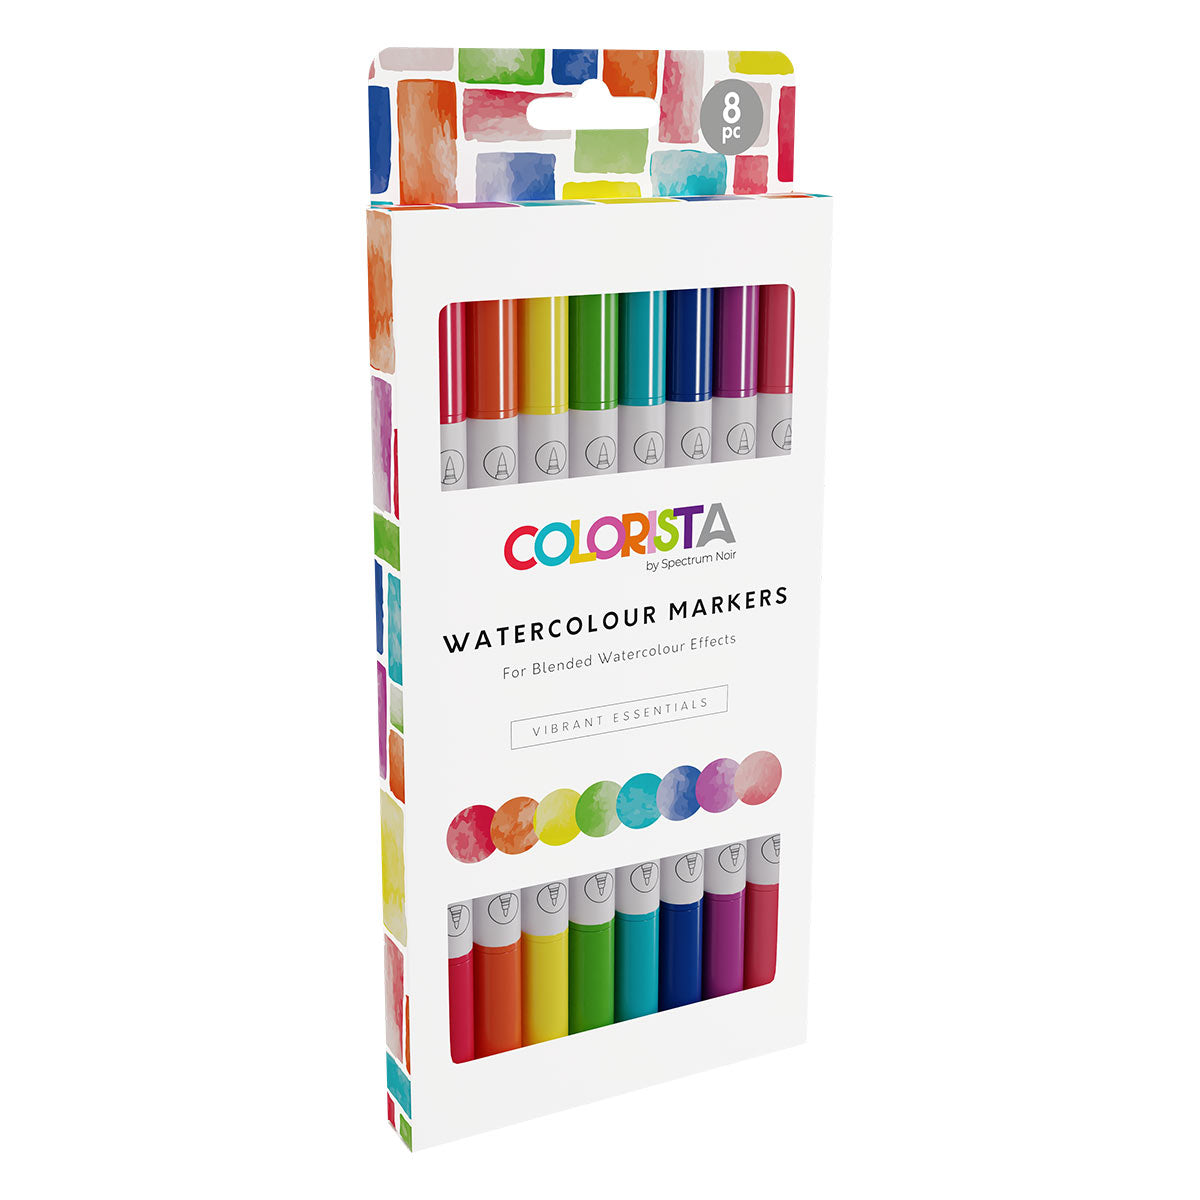 Spectrum Noir Colorista - Watercolour Markers (8 set) Vibrant Essentials